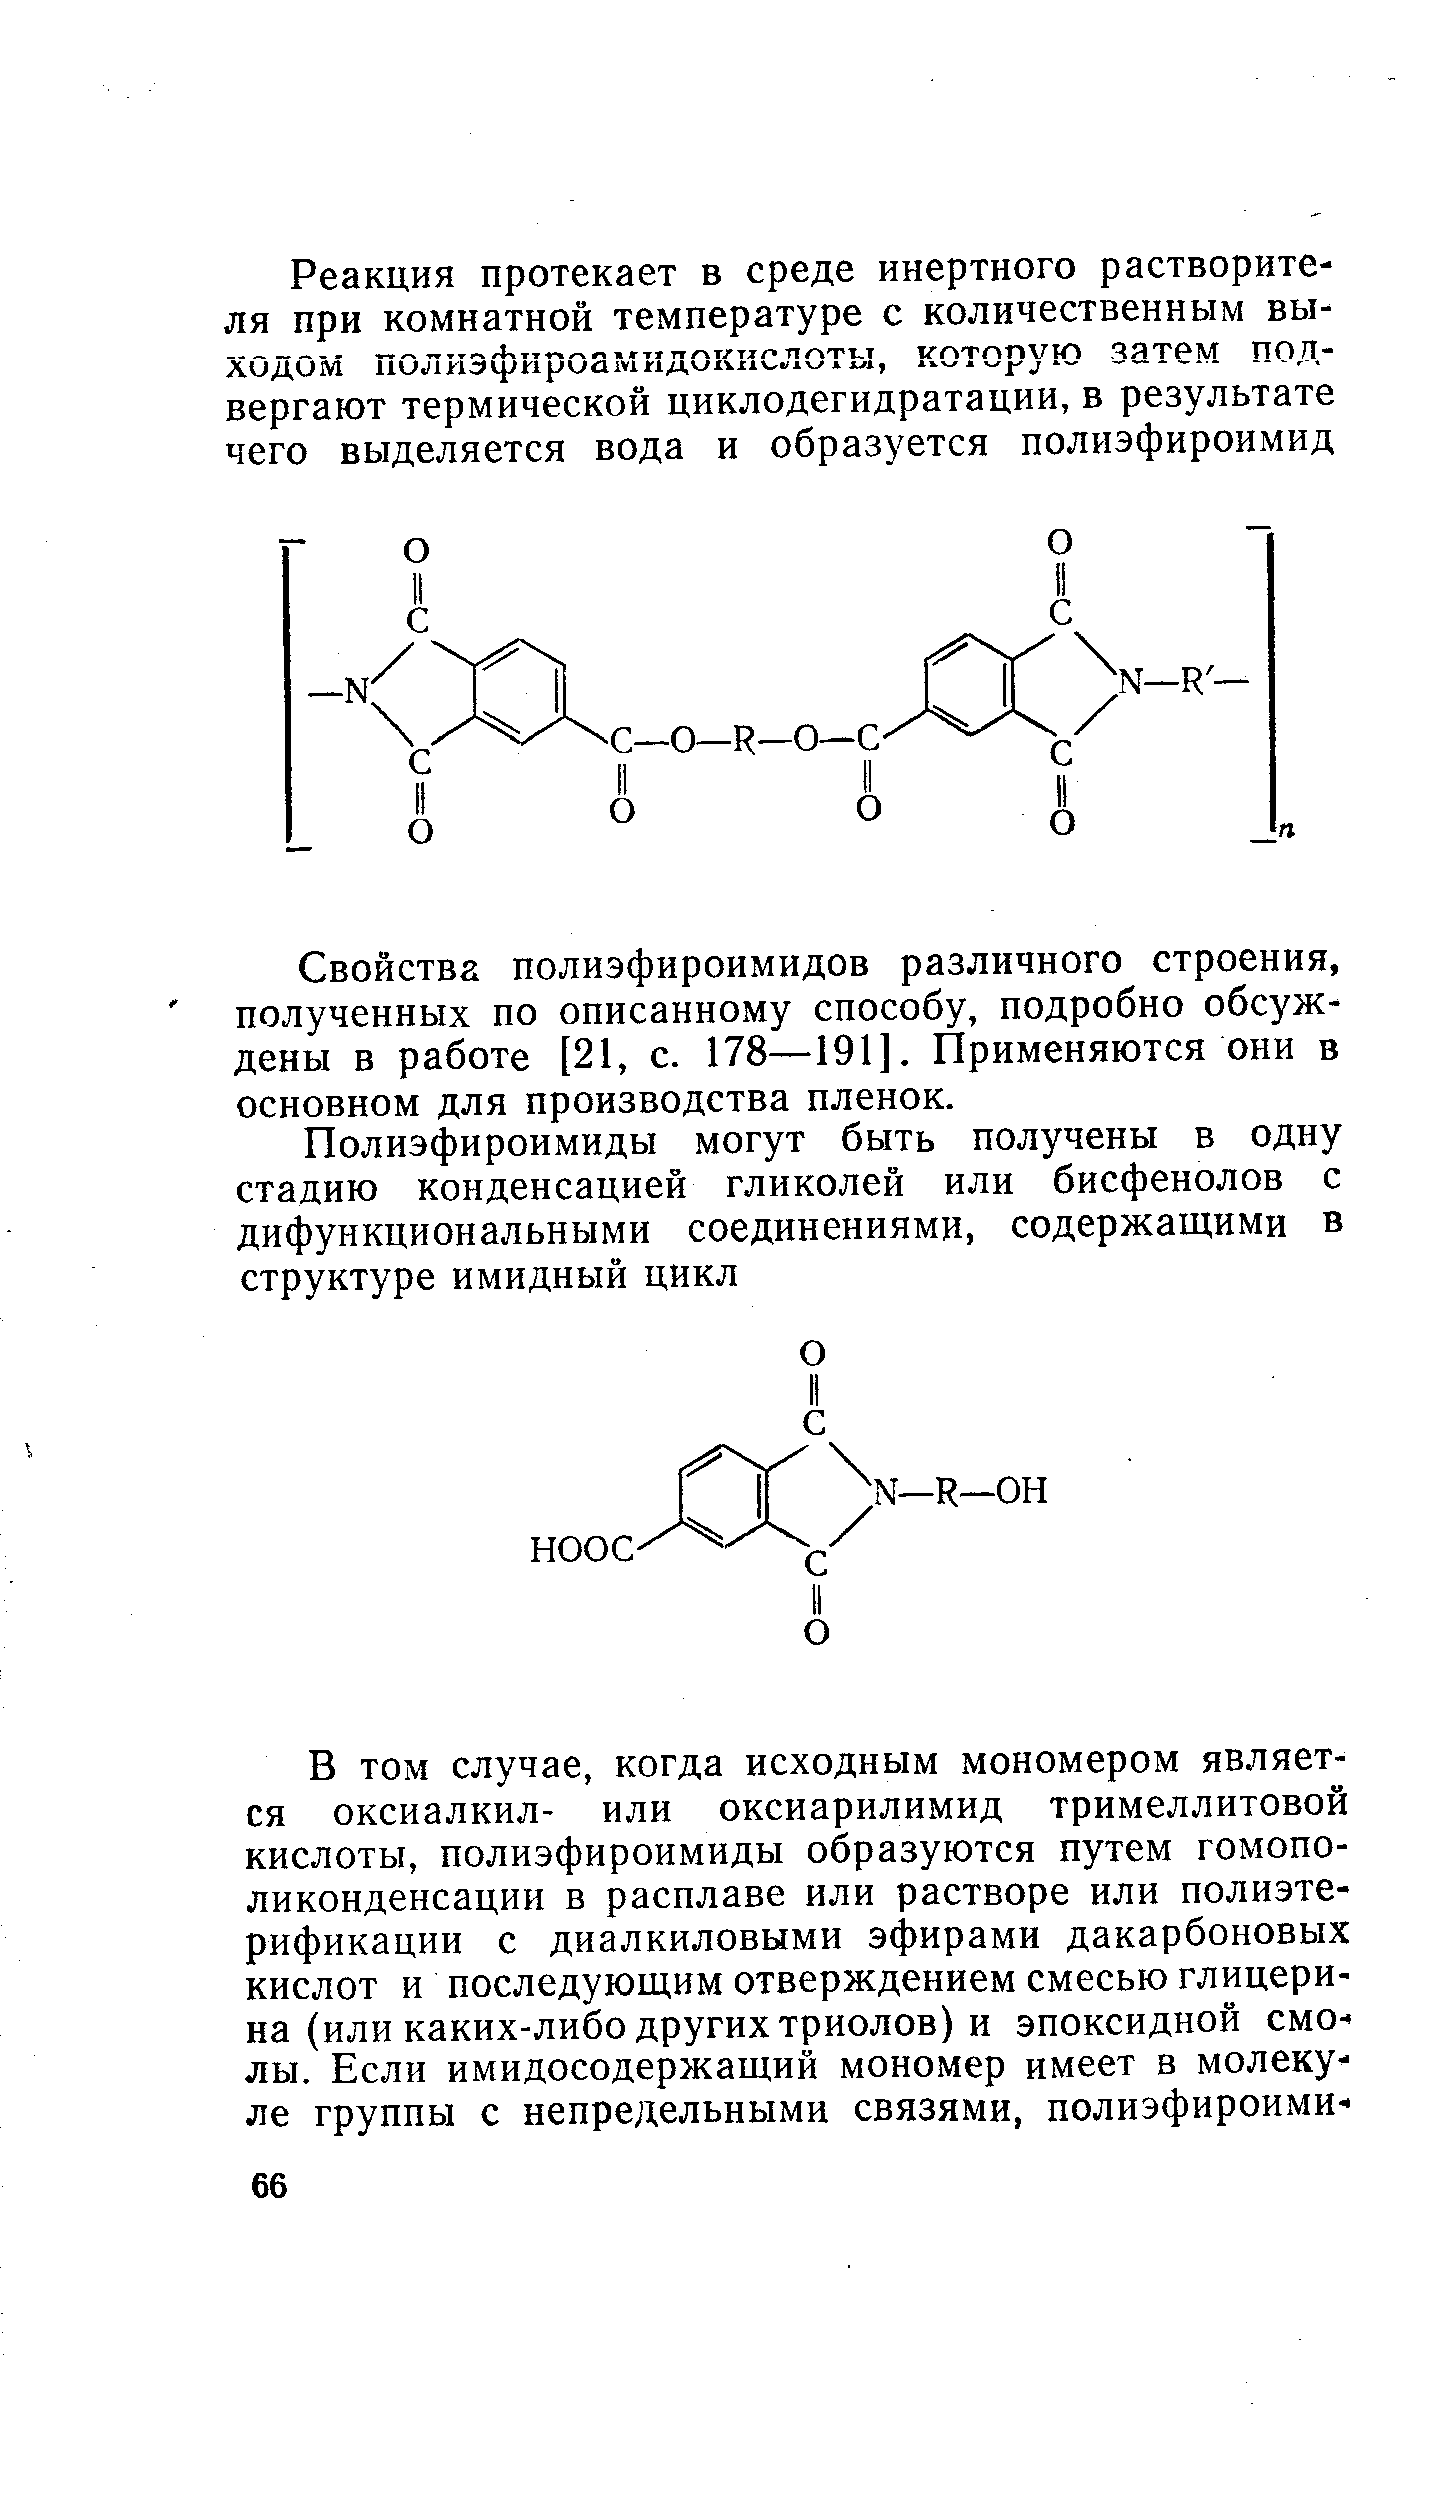 Свойства полиэфироимидов различного строения, полученных по описанному способу, подробно обсуждены в работе [21, с. 178—191]. Применяются они в основном для производства пленок.